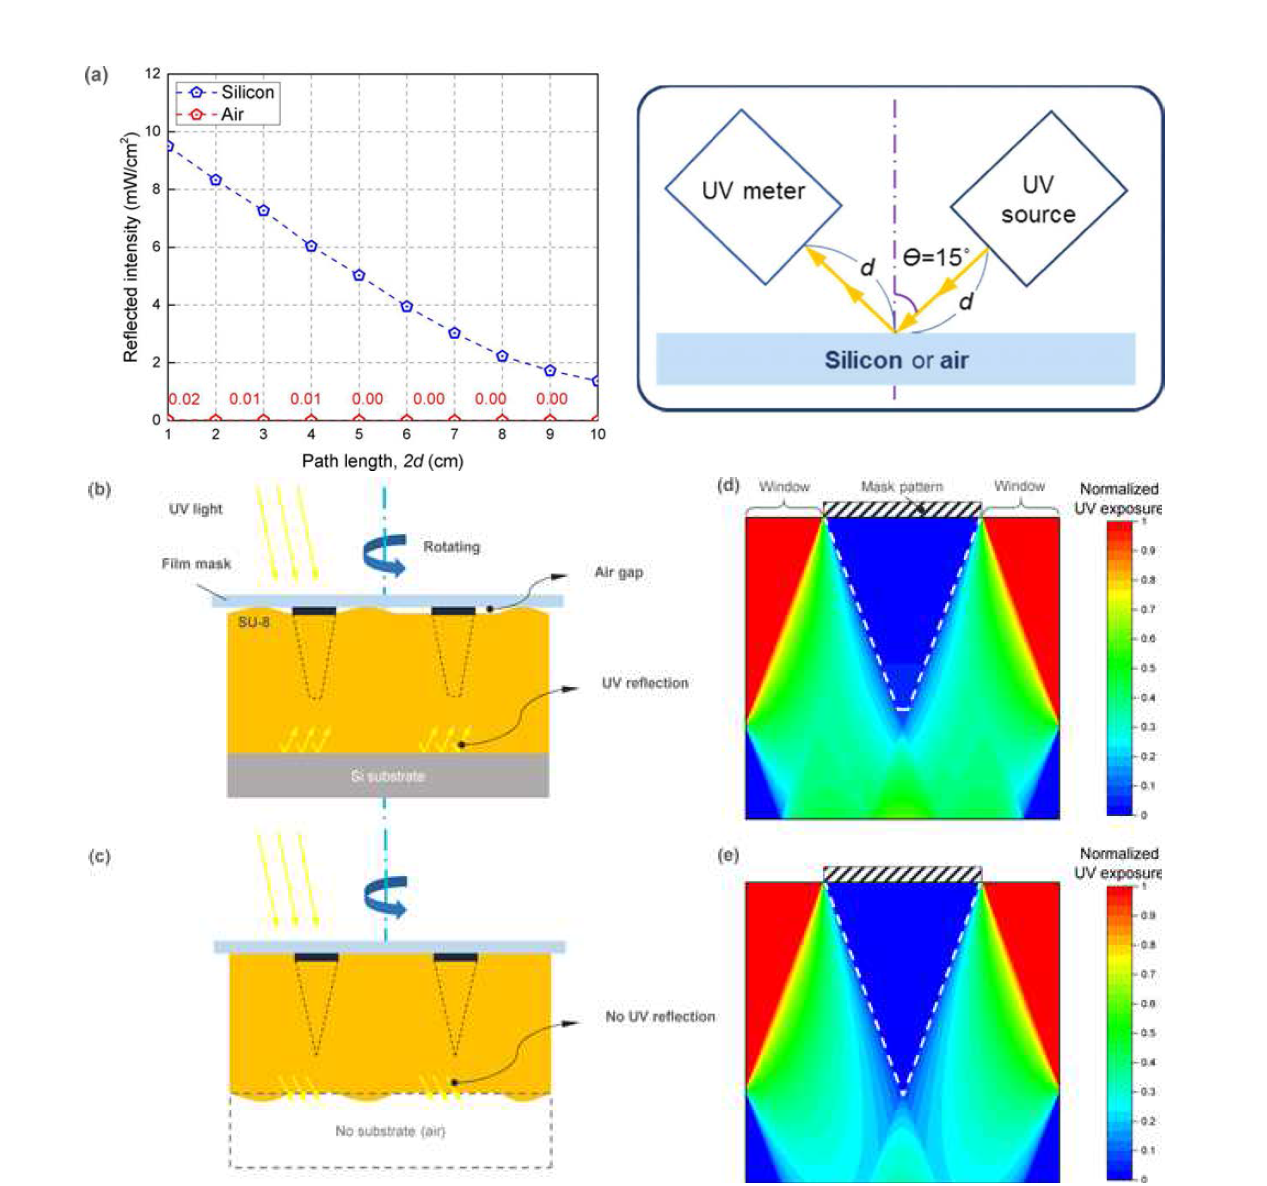 미소바늘 제작 공정 최적화 및 모델링: (A)기존 공정(silicon 기판, 푸른색 선)과 하이브리드 공정(공기, 붉은색 선)에서 경로에 따른 UV(365 nm) 강도 비교. (B-C)기존 공정과 하이브리드 공정 비교. (D-E) 하부기판에 의한 반사 유·무에 따른 UV 강도 분포 모델링.